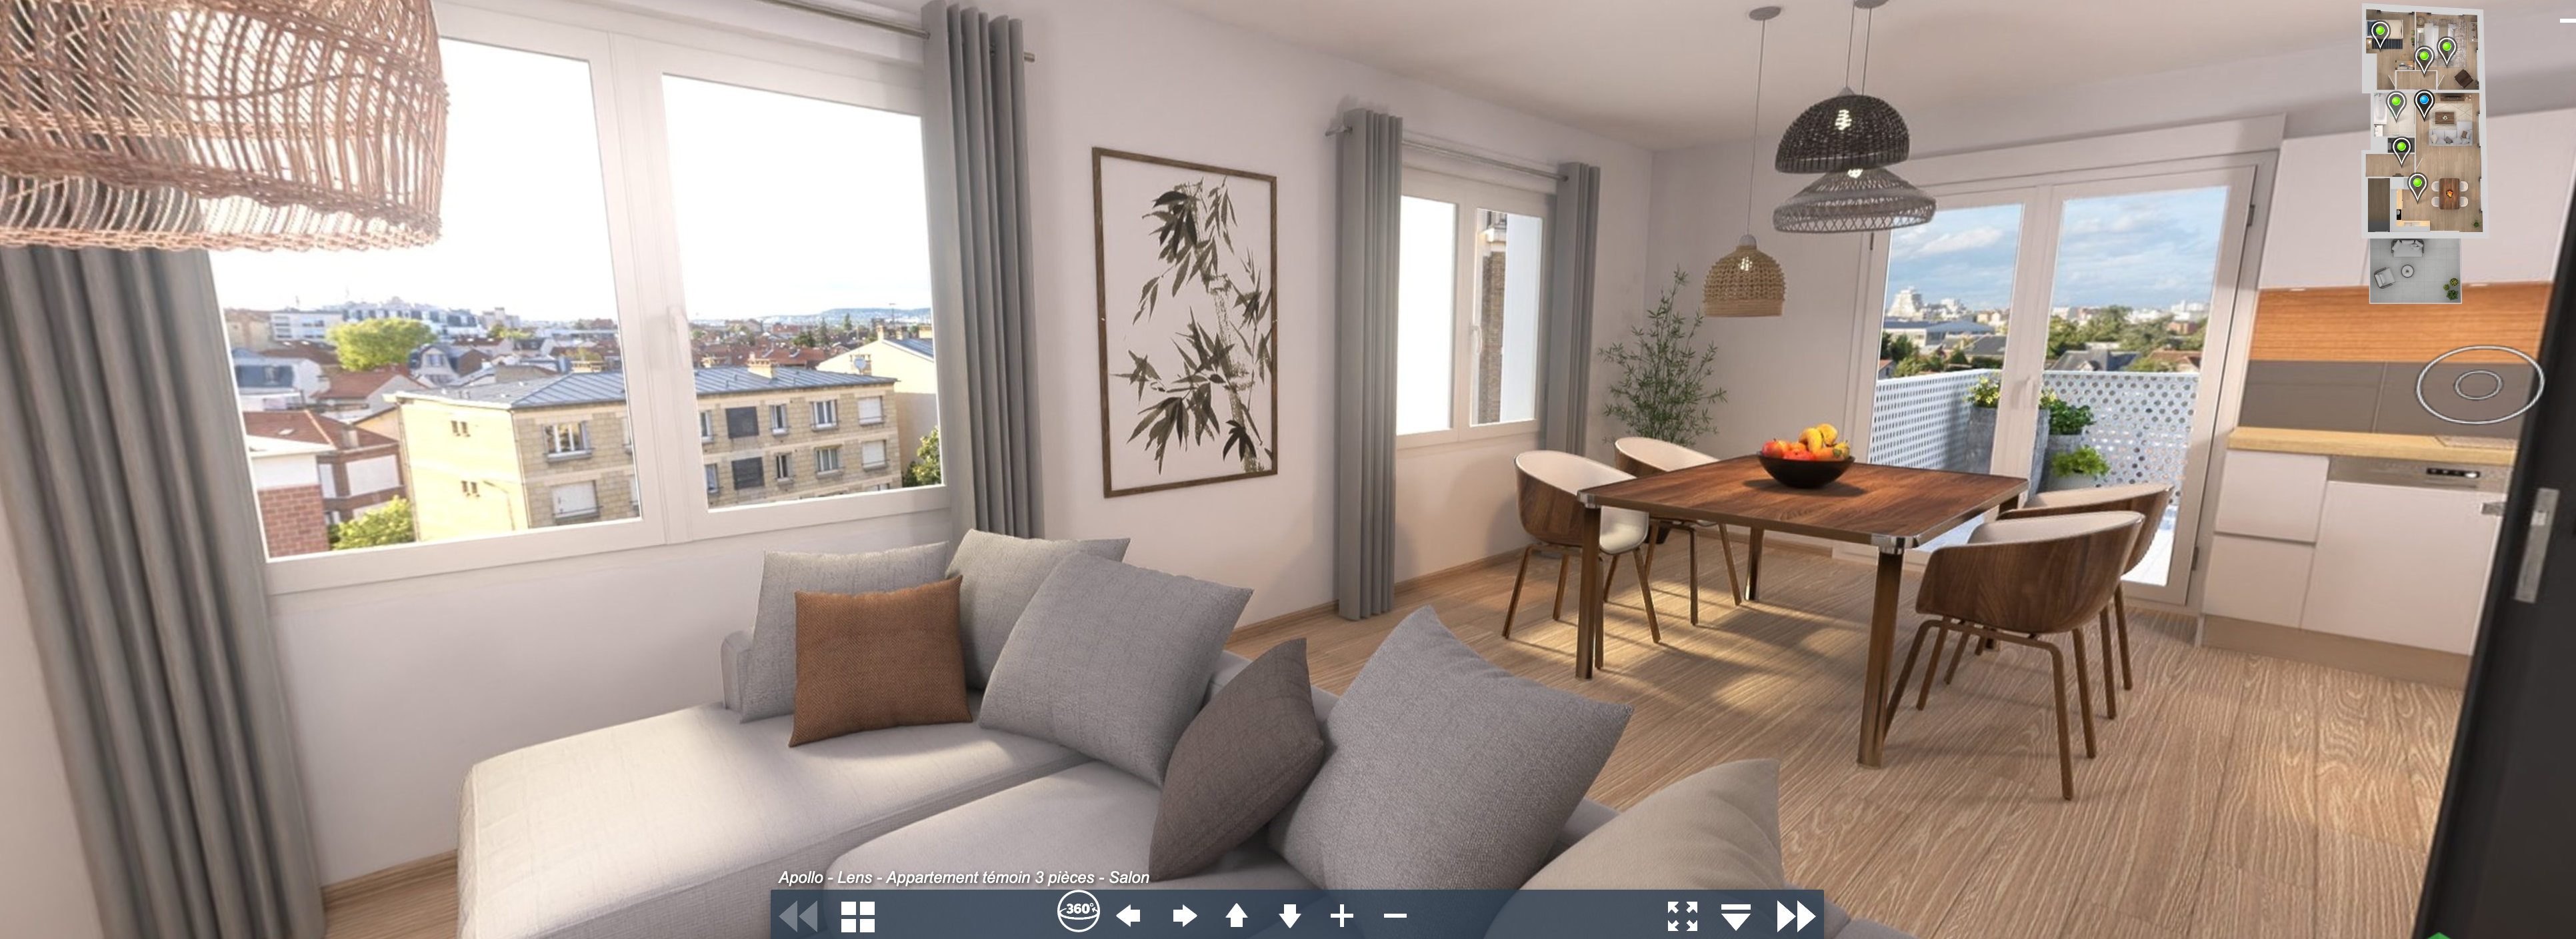 Découvrez la visite virtuelle de votre futur appartement - Apollo Lens